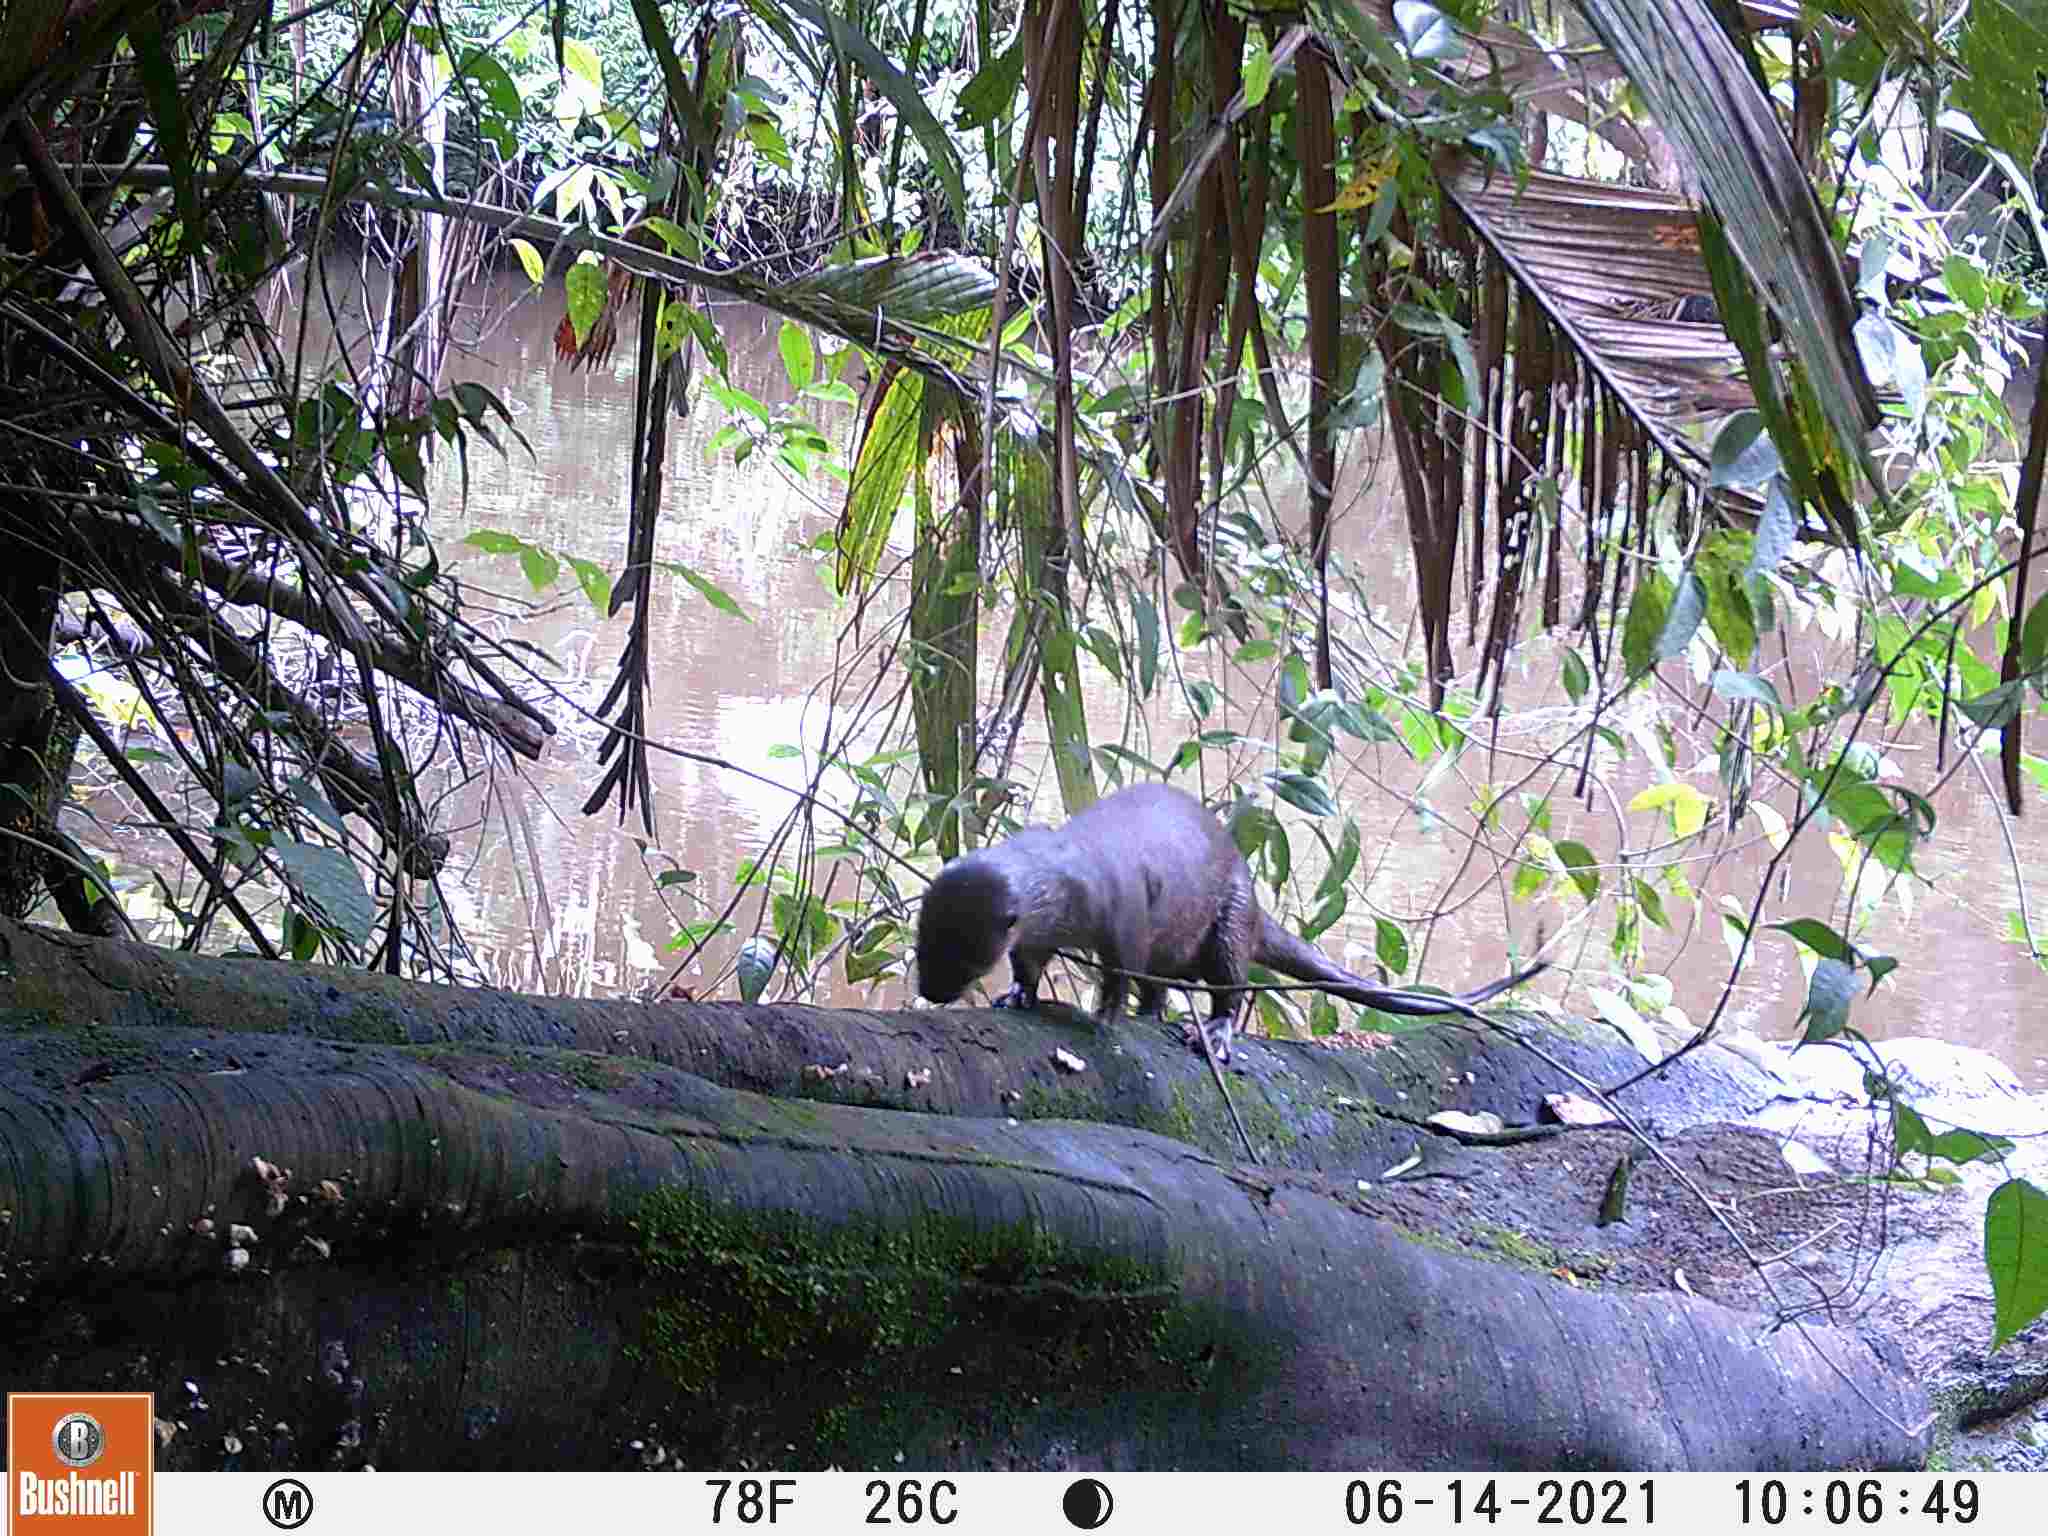 An otter runs up a log in a rainforest.